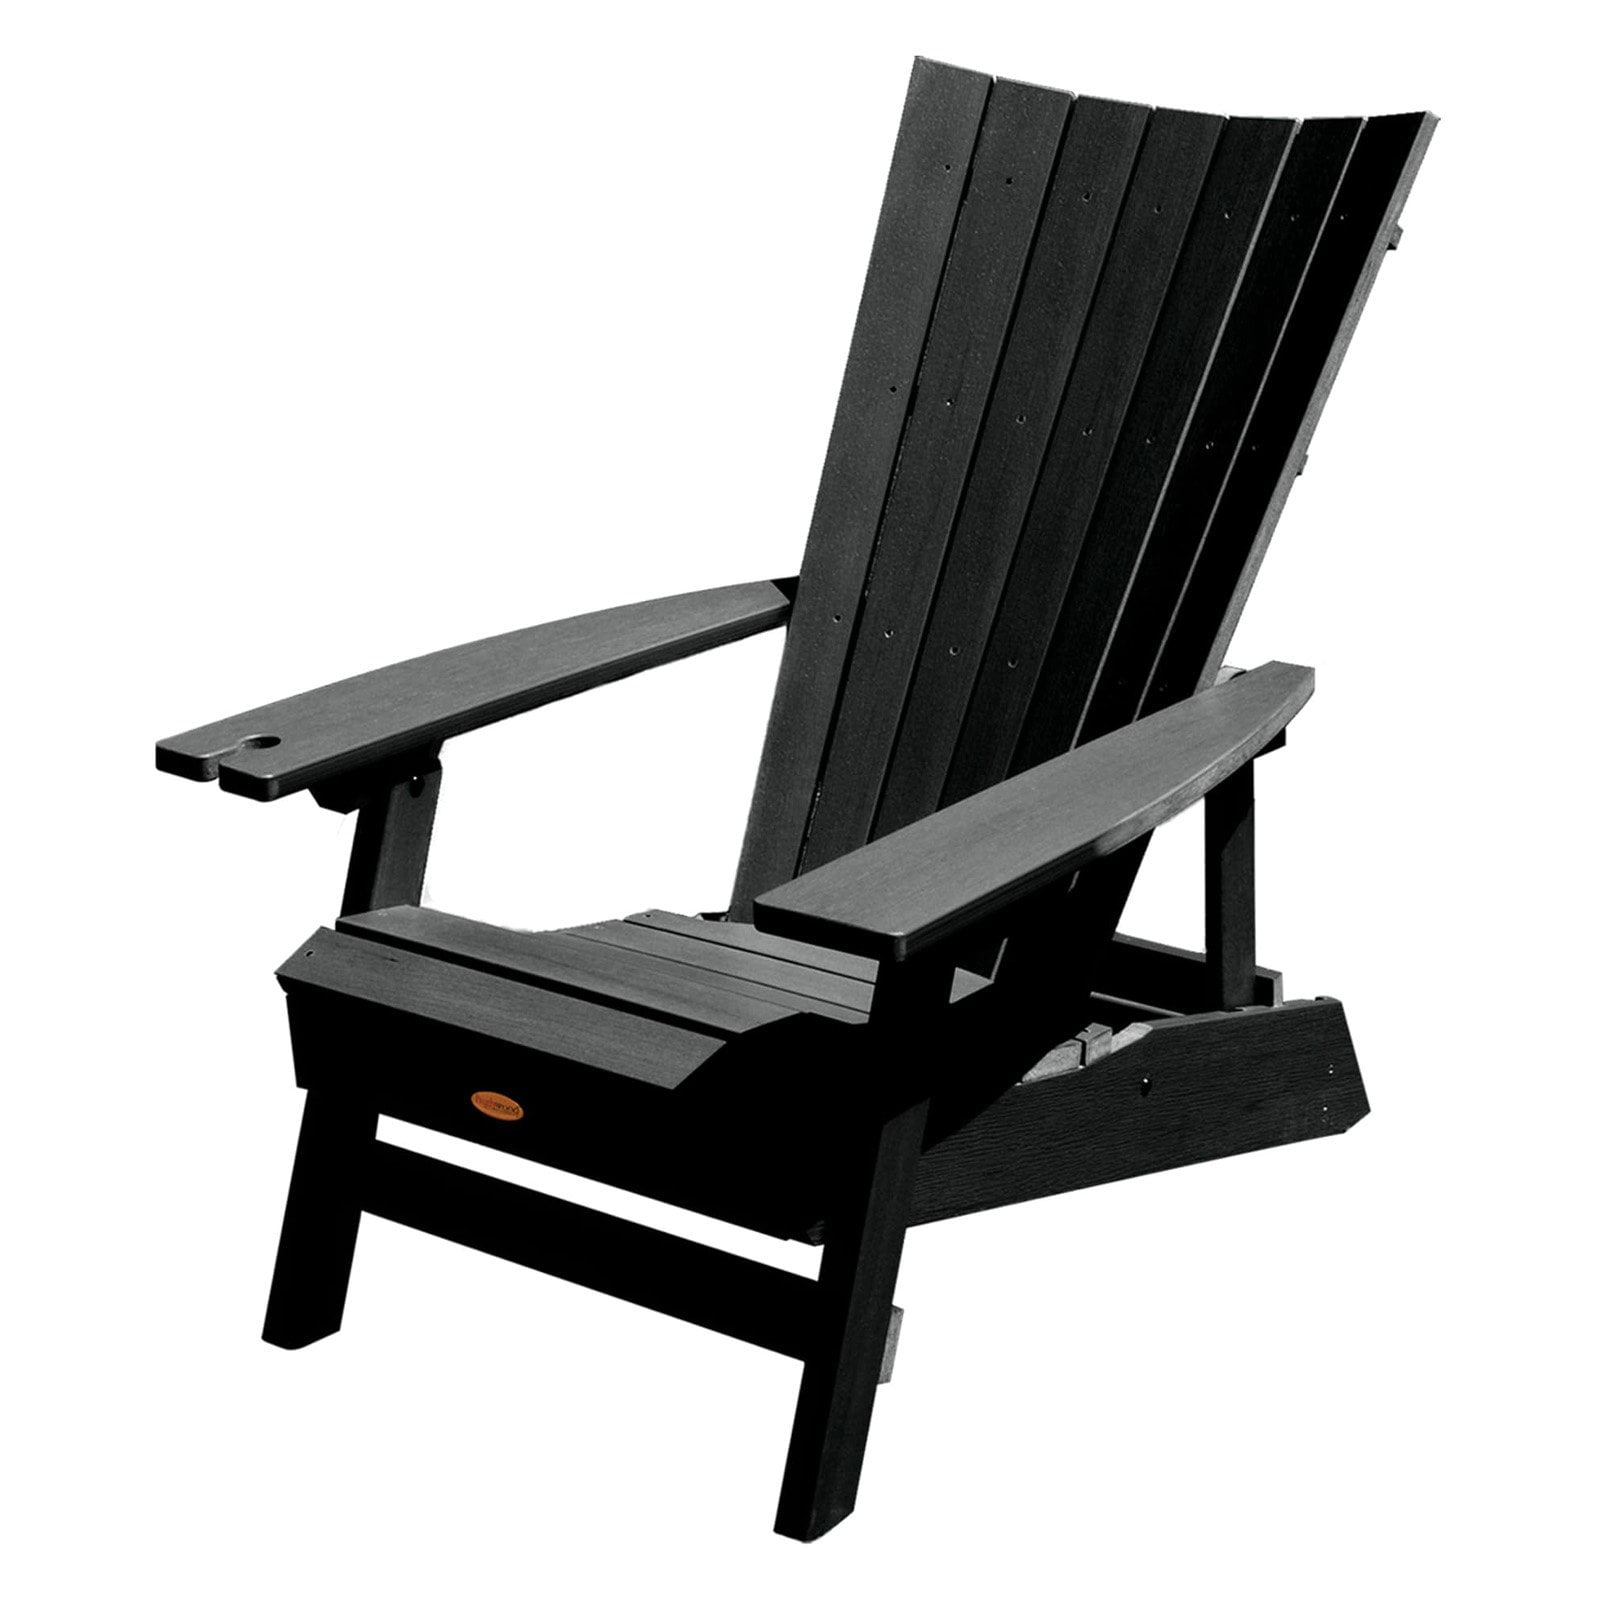 New Manhattan Beach Adirondack Chair for Simple Design